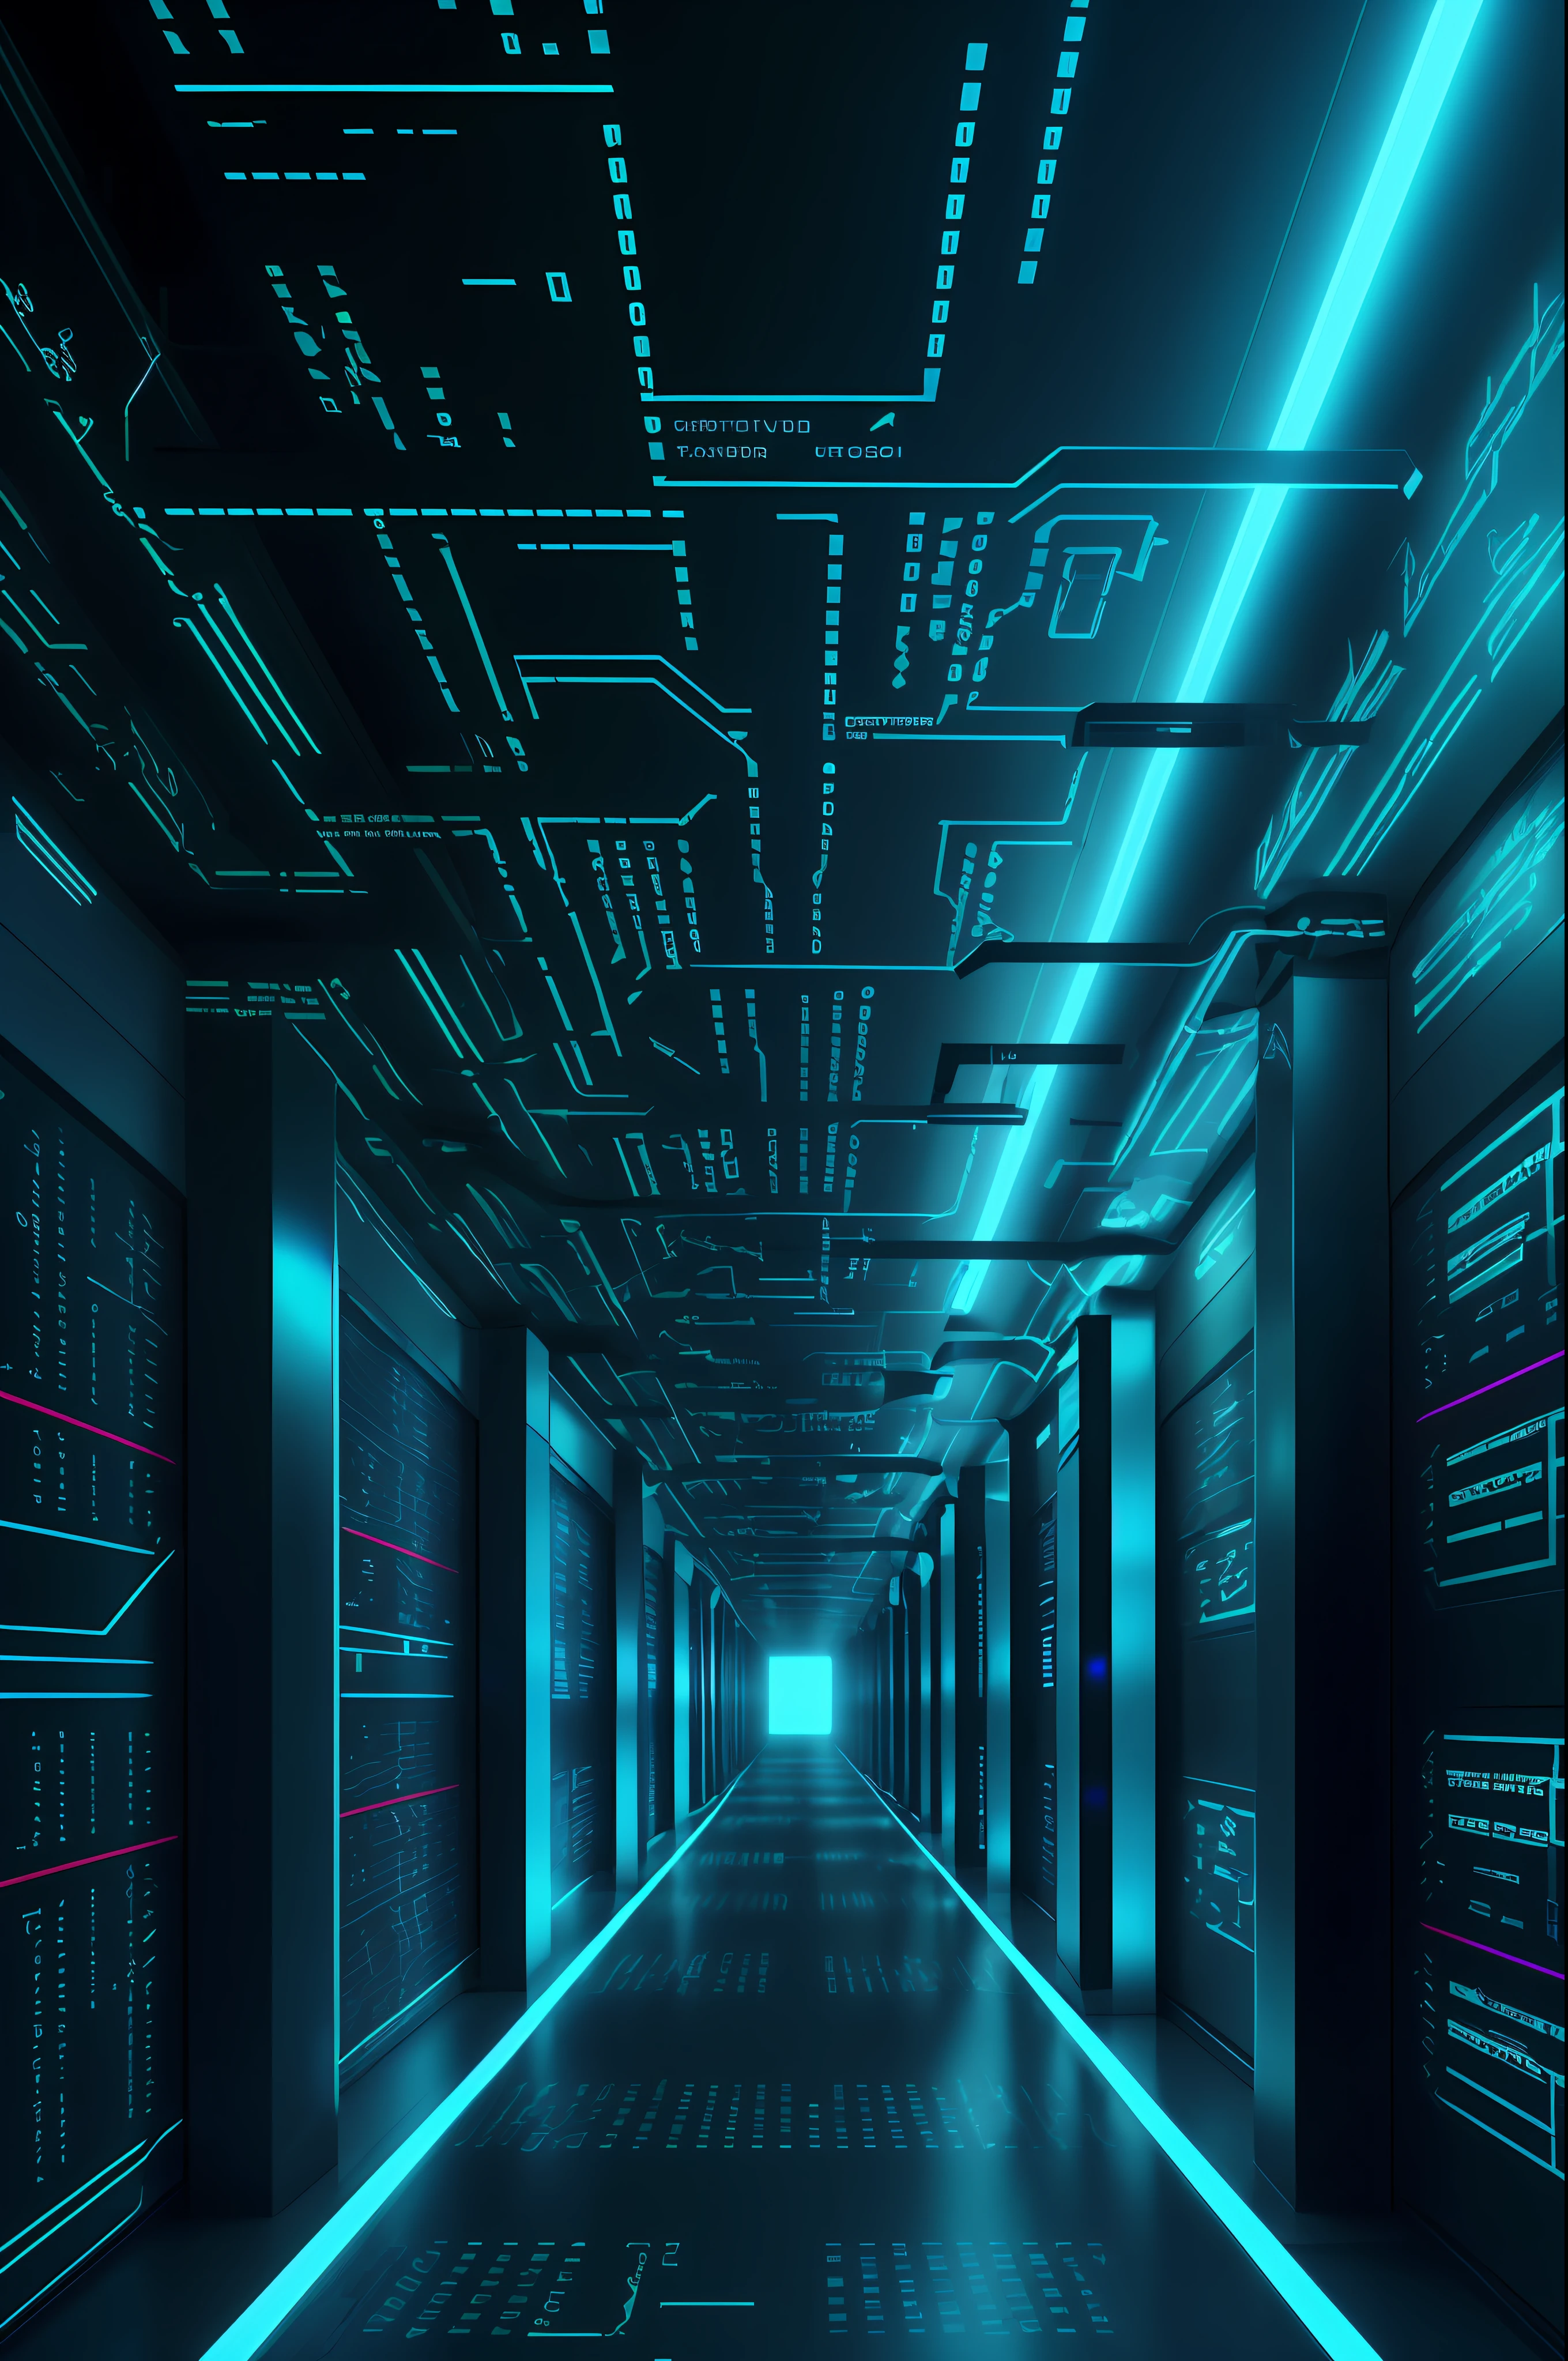 網路空間, 一條長長的走廊, 儲存網格, 程式碼